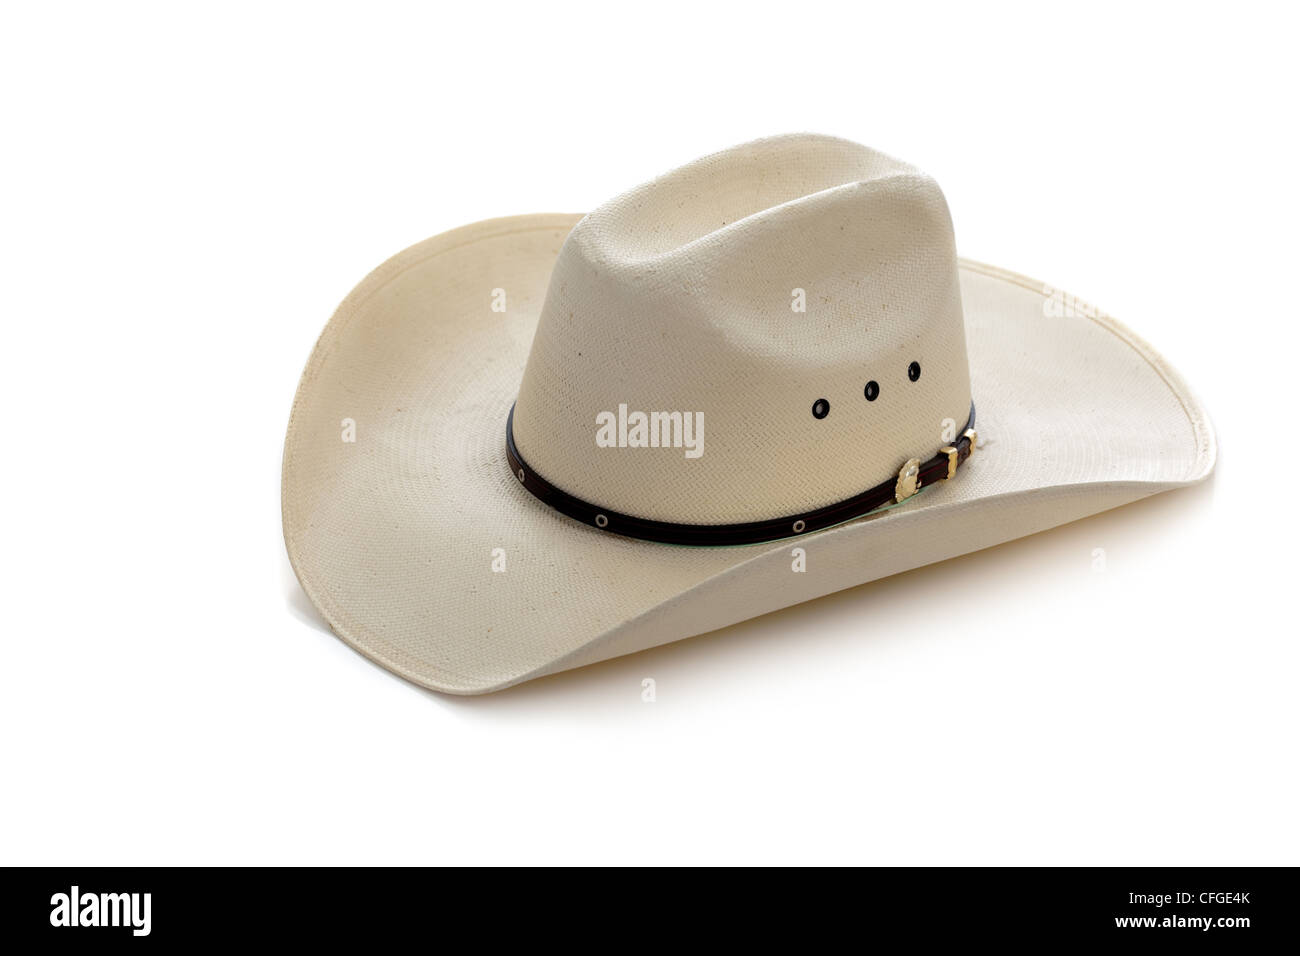 Weißer Stetson Cowboyhut auf weißem Hintergrund Stockfotografie - Alamy